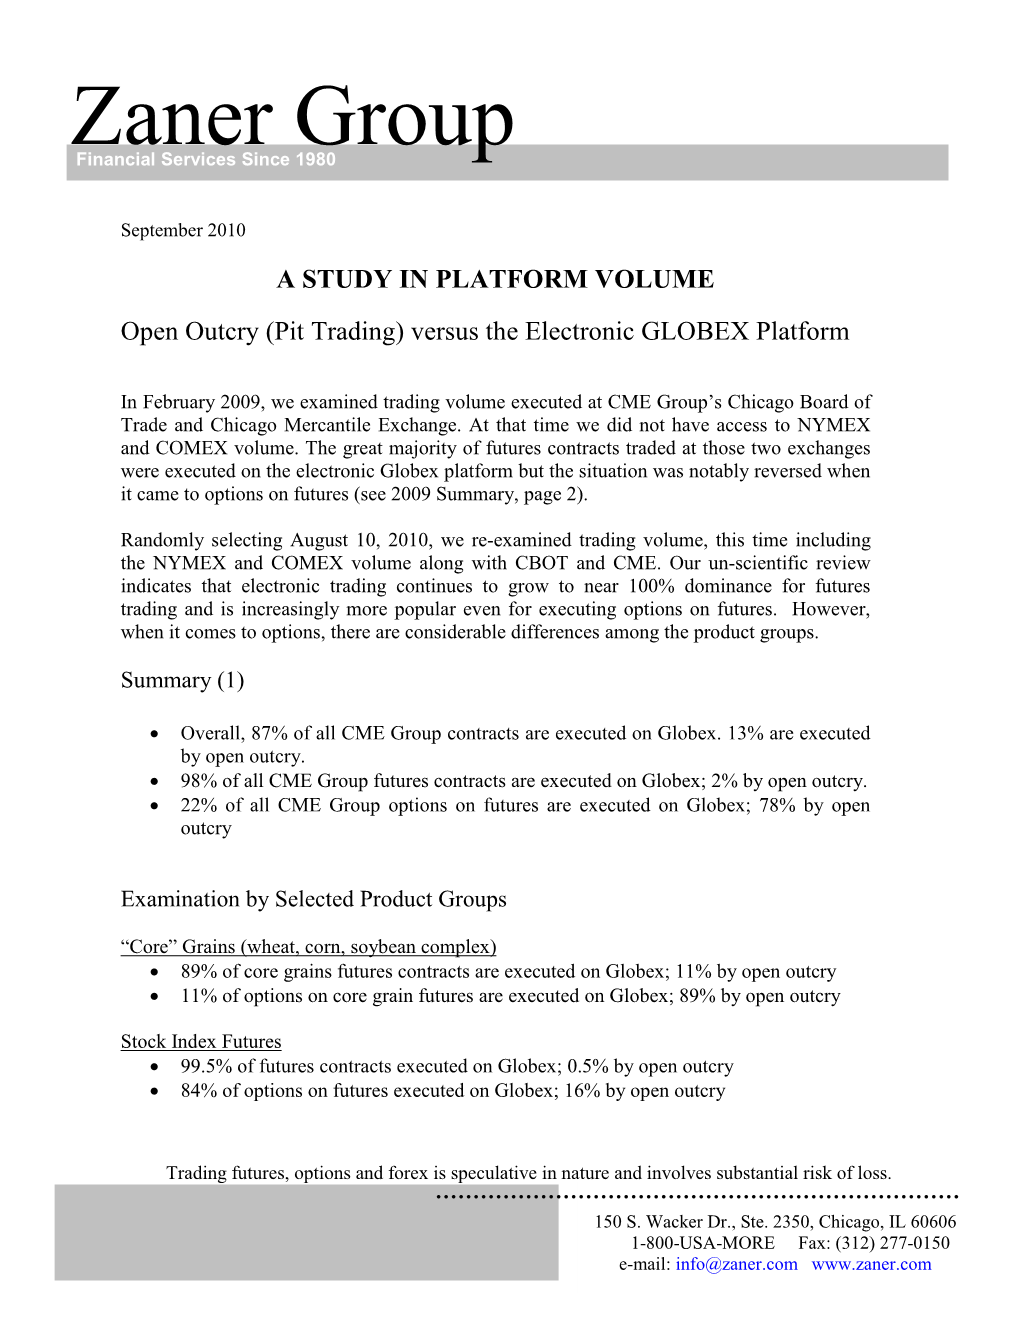 A Study in Platform Volume